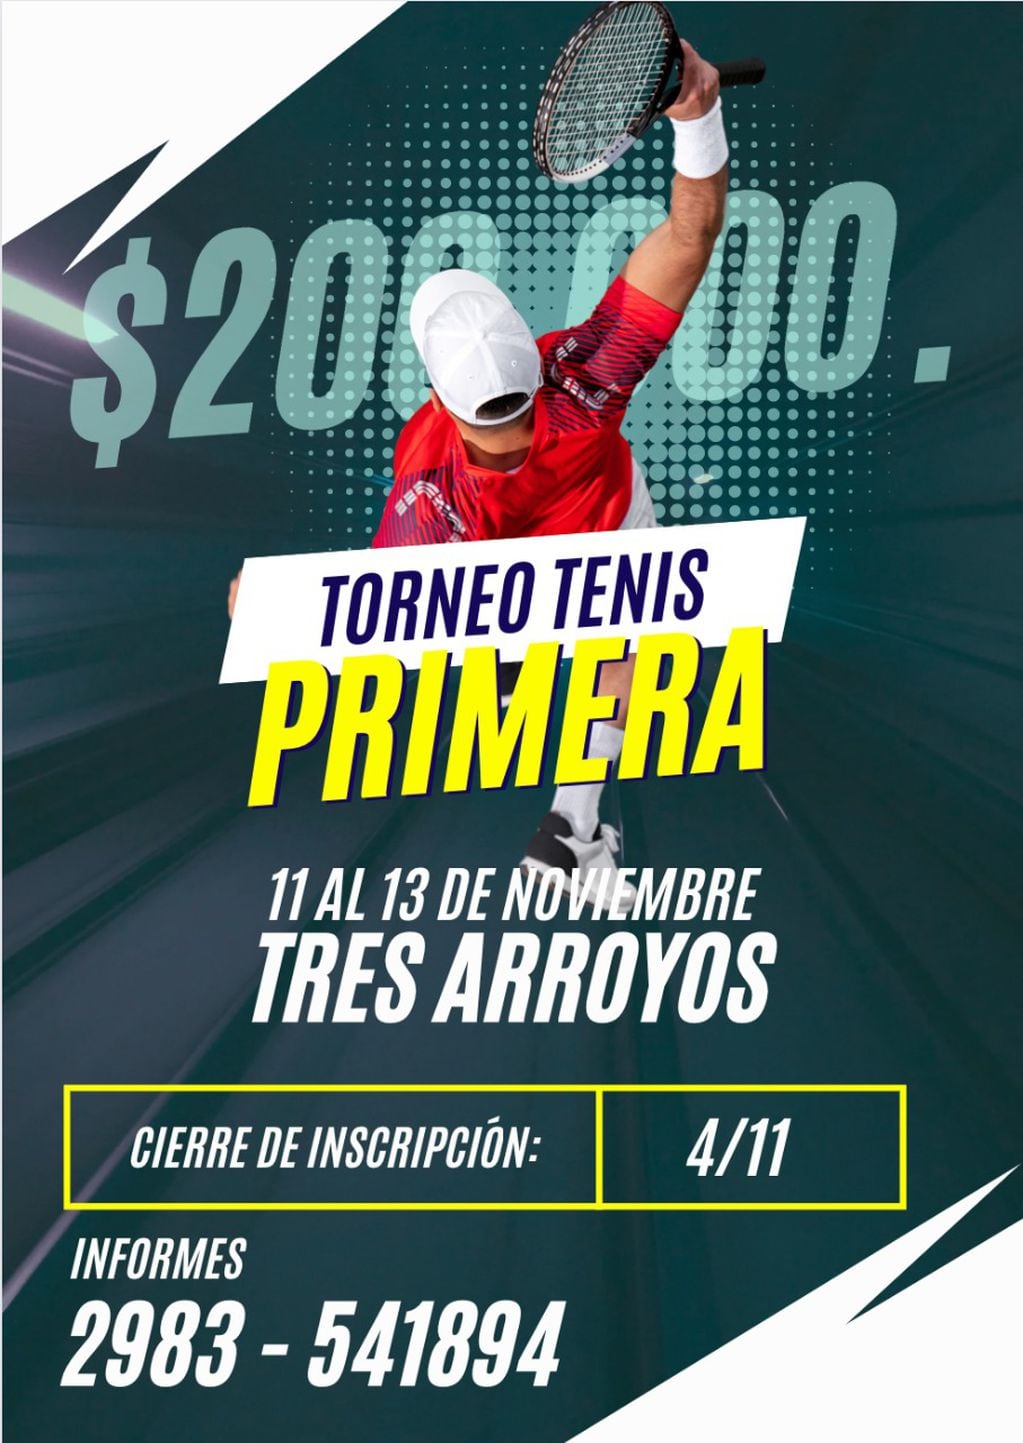 El Club Costa Sud de Tres Arroyos organiza un torneo de Tenis rentado